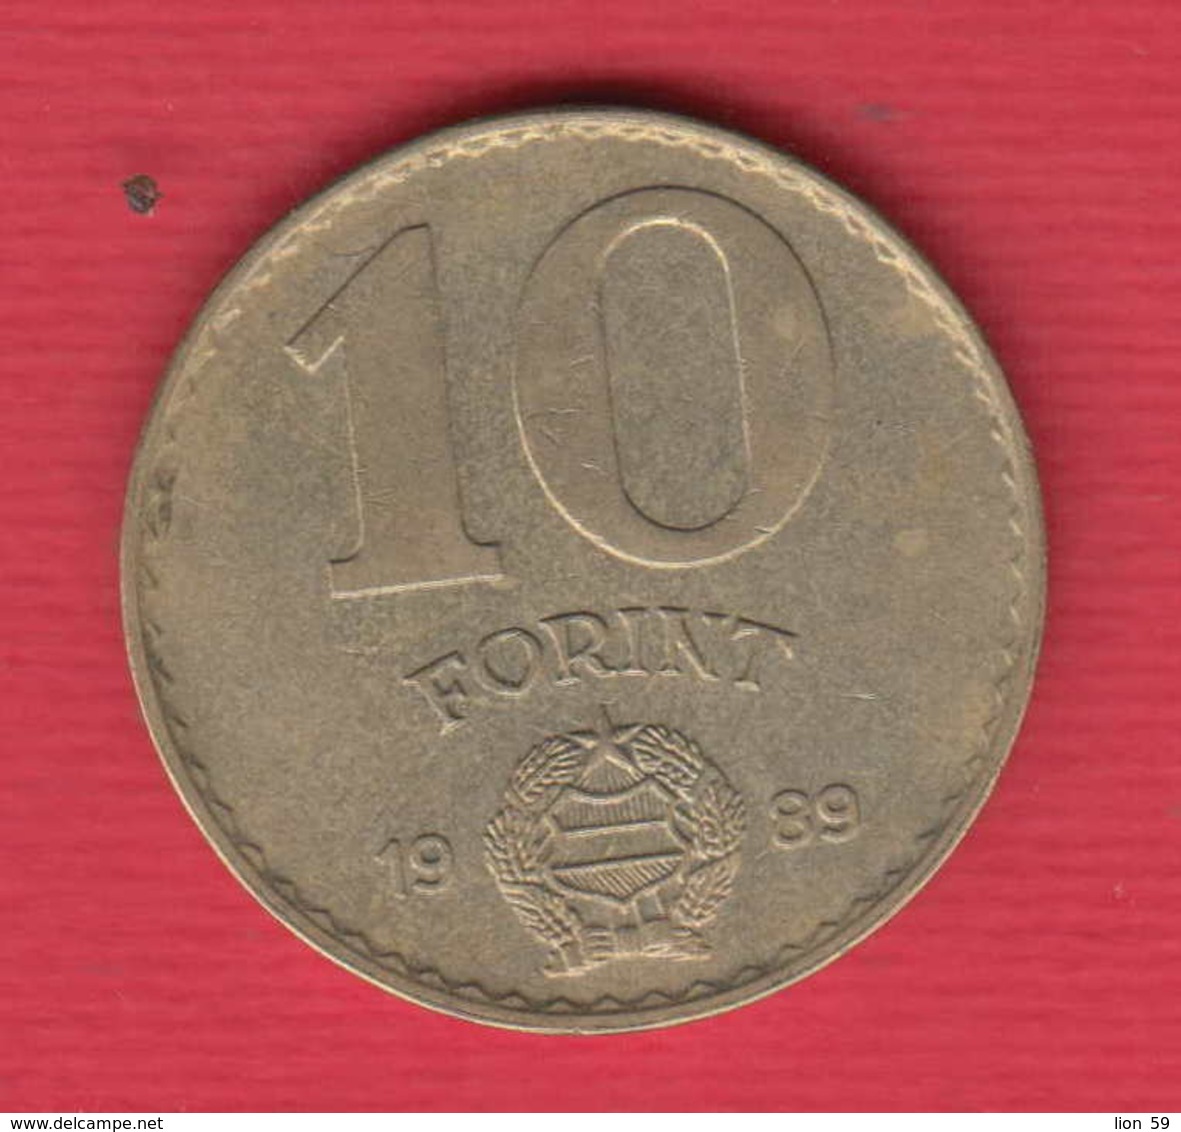 F2766A / - 10 Forint - 1989 -  Hungary Hongrie Ungarn - Coins Munzen Monnaies Monete - Hongrie